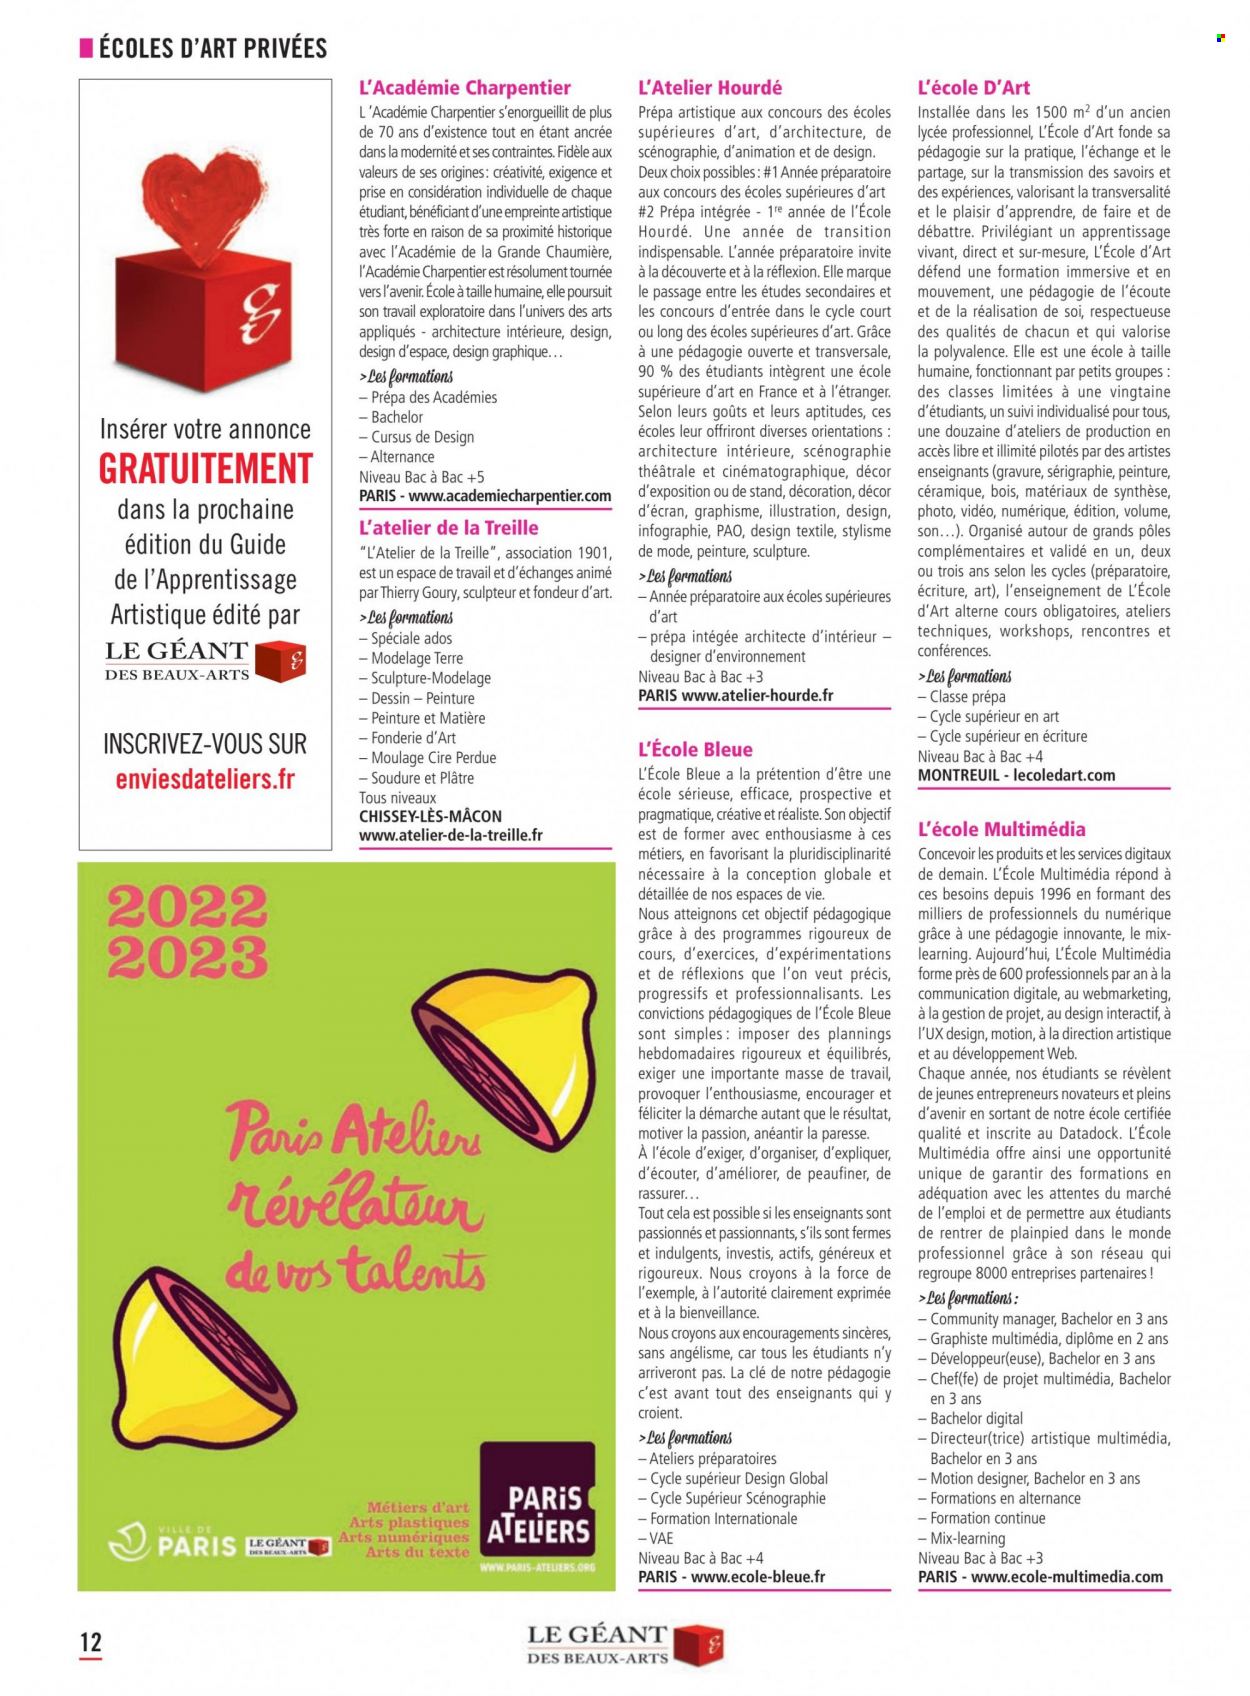 Catalogue Le Géant des Beaux-Arts. 